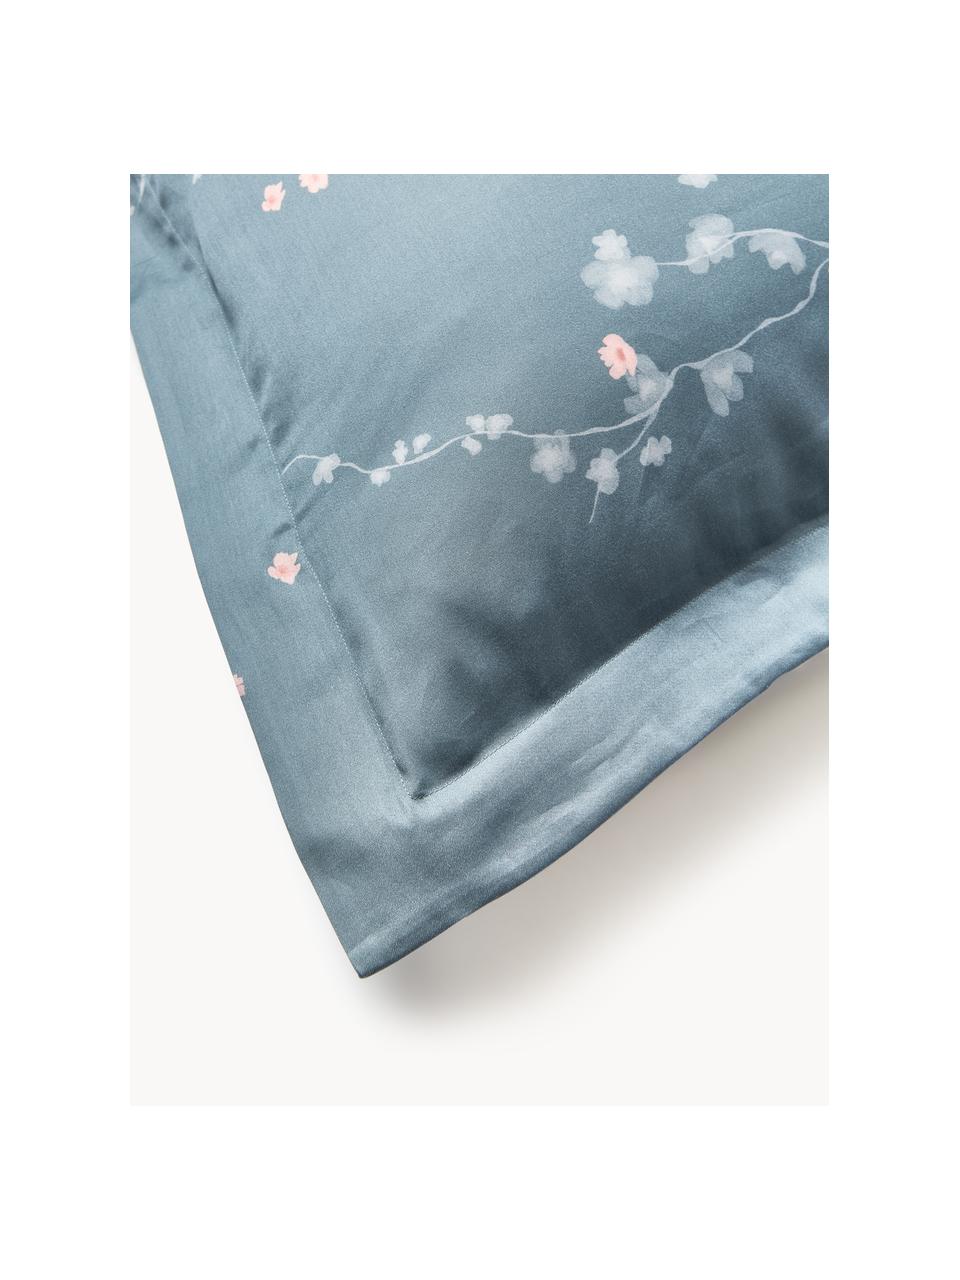 Housse de couette en satin de coton à motif floral Sakura, Bleu, rose pâle, blanc, larg. 260 x long. 240 cm